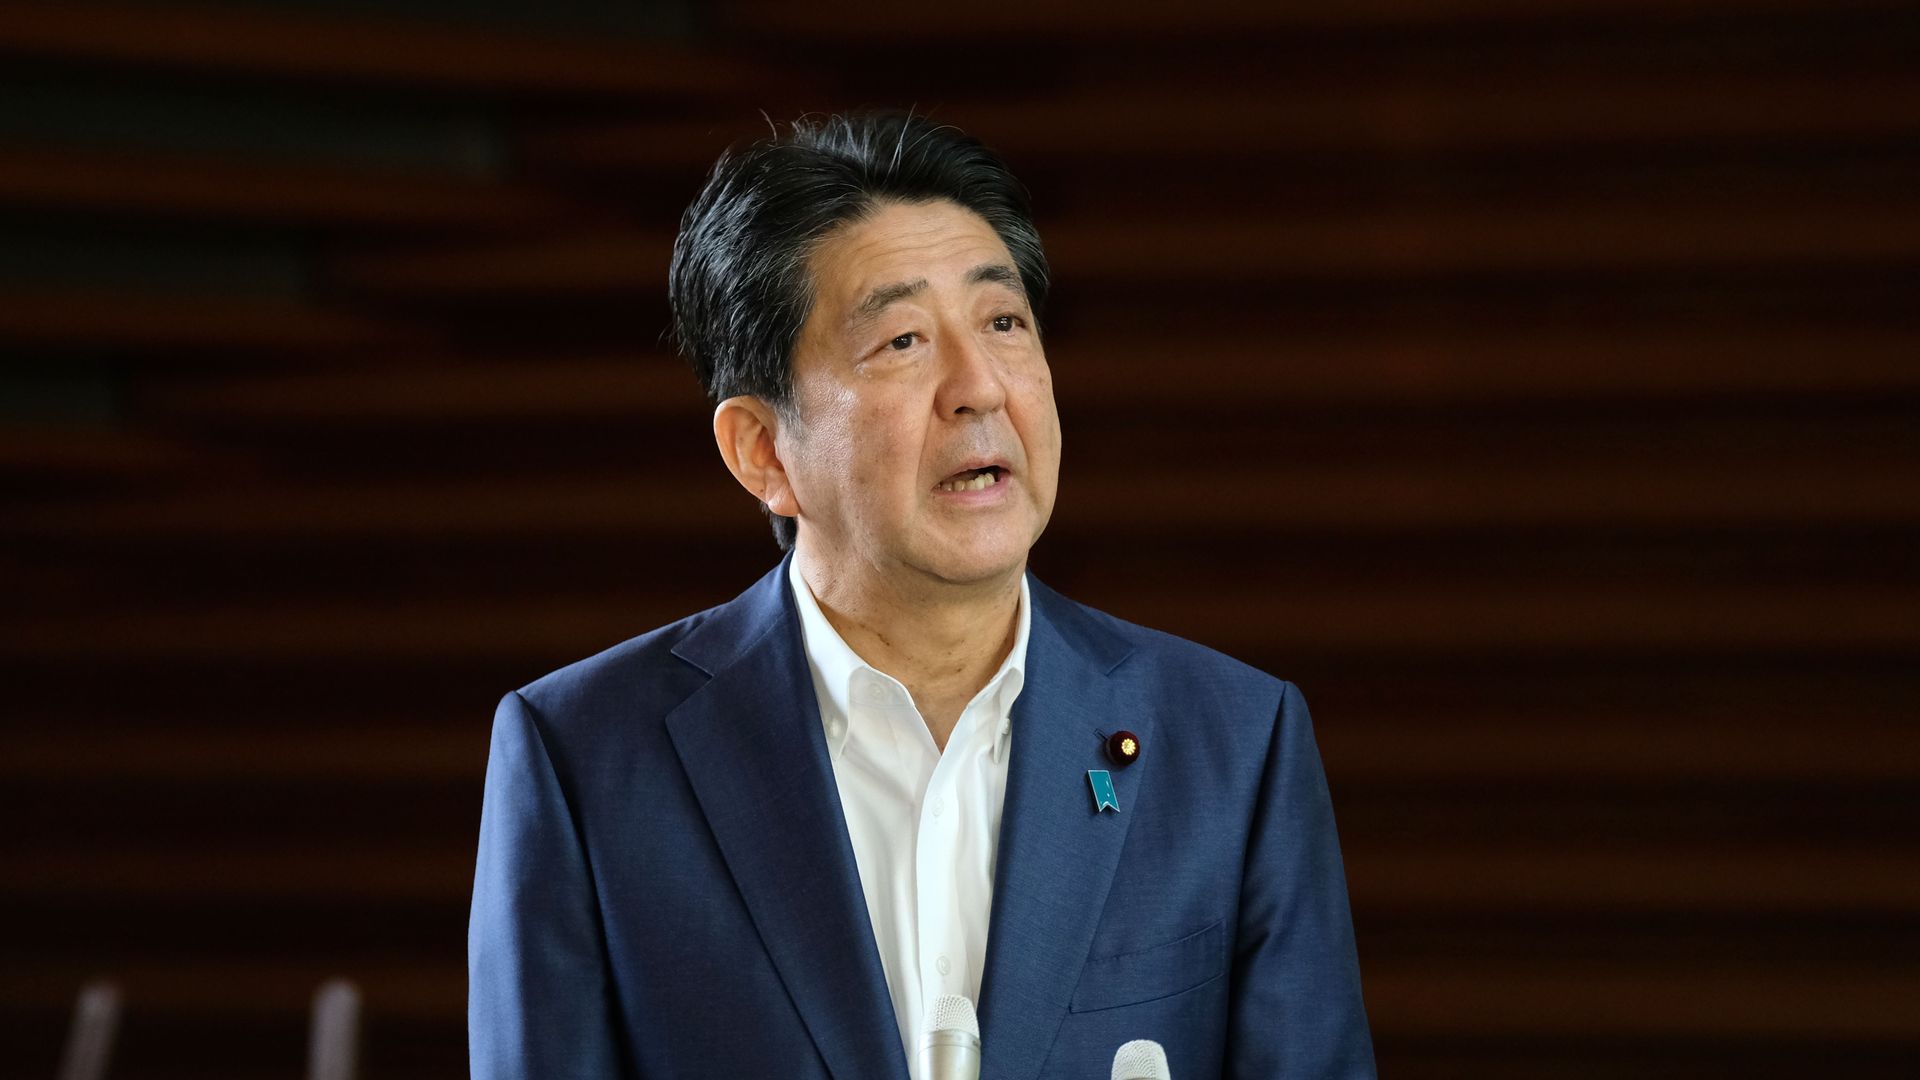 Photo of Shinzo Abe speaking